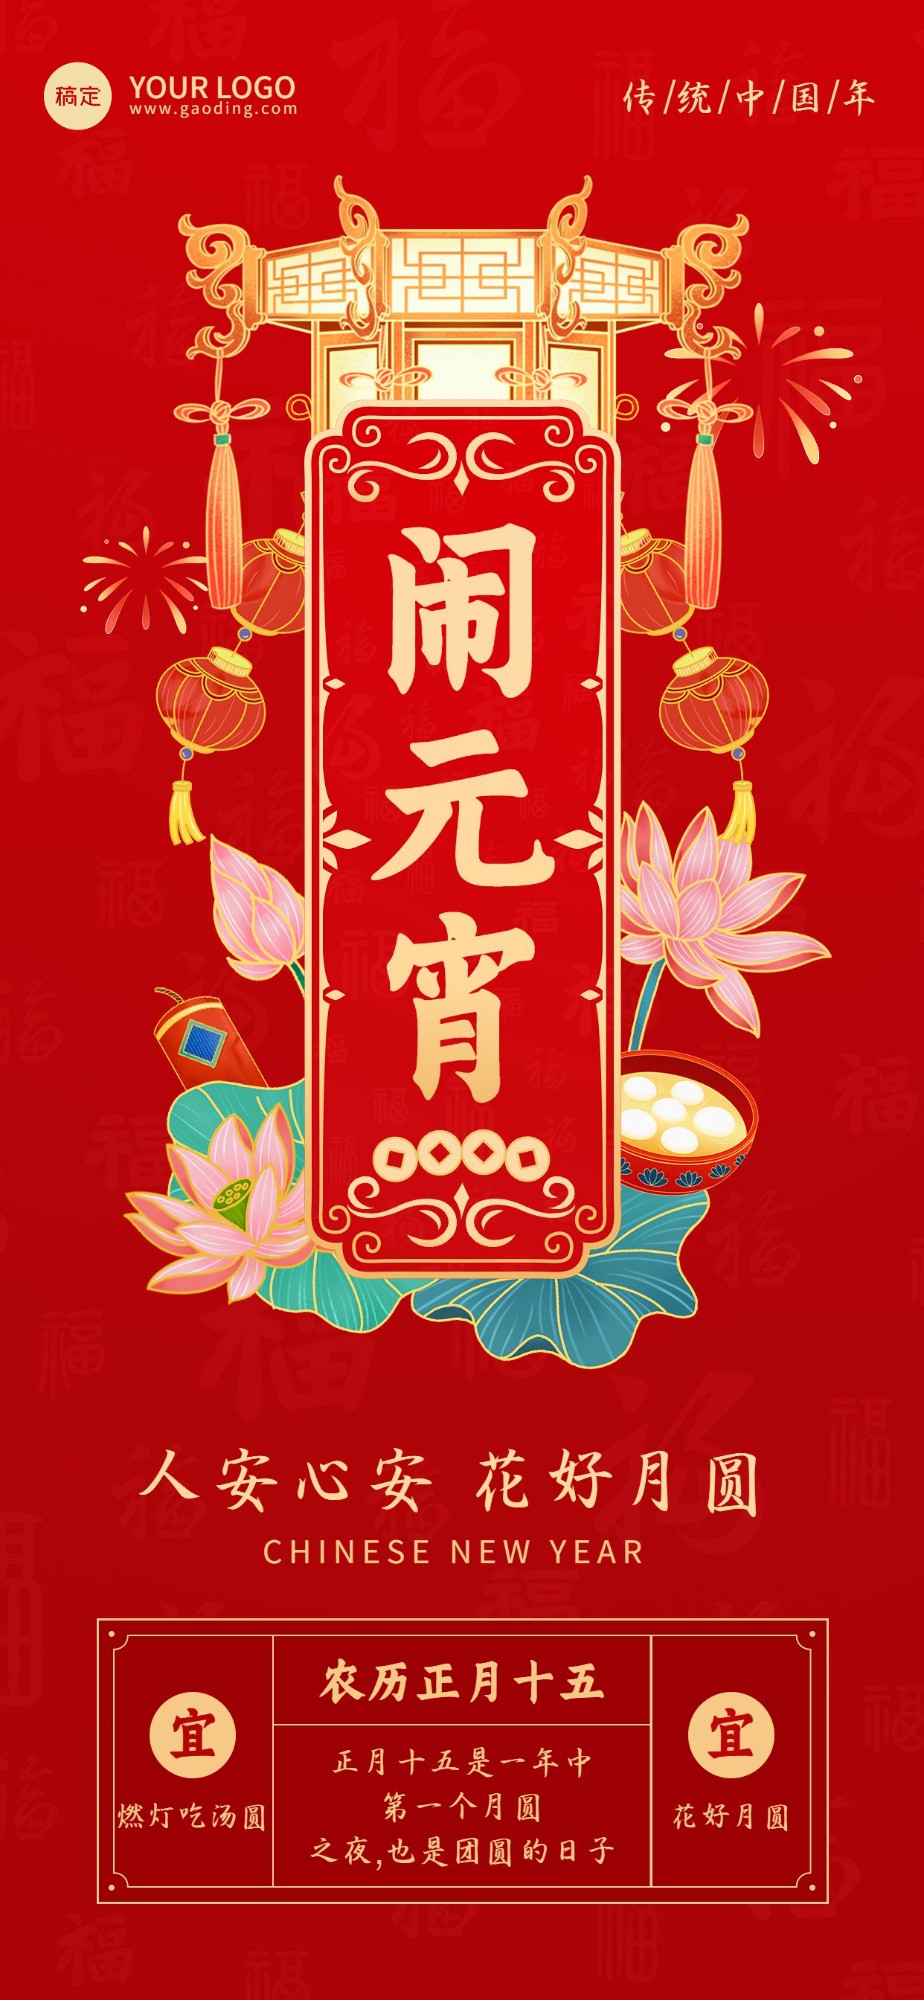 企业正月十五元宵节节日祝福国潮风全屏竖版海报预览效果